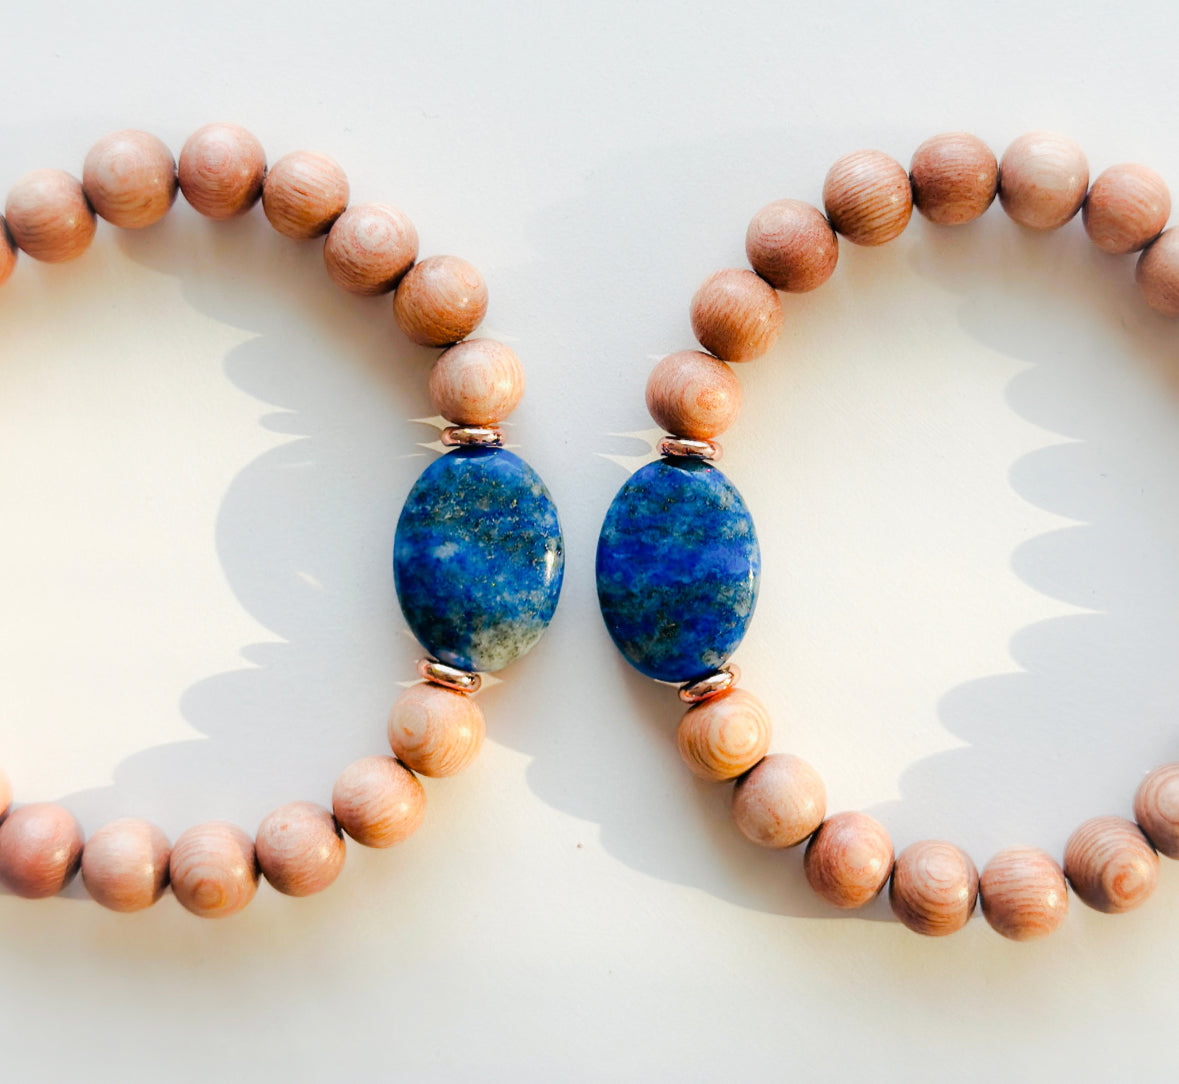 rosewood bracelet with a Lapis Lazuli focal bead